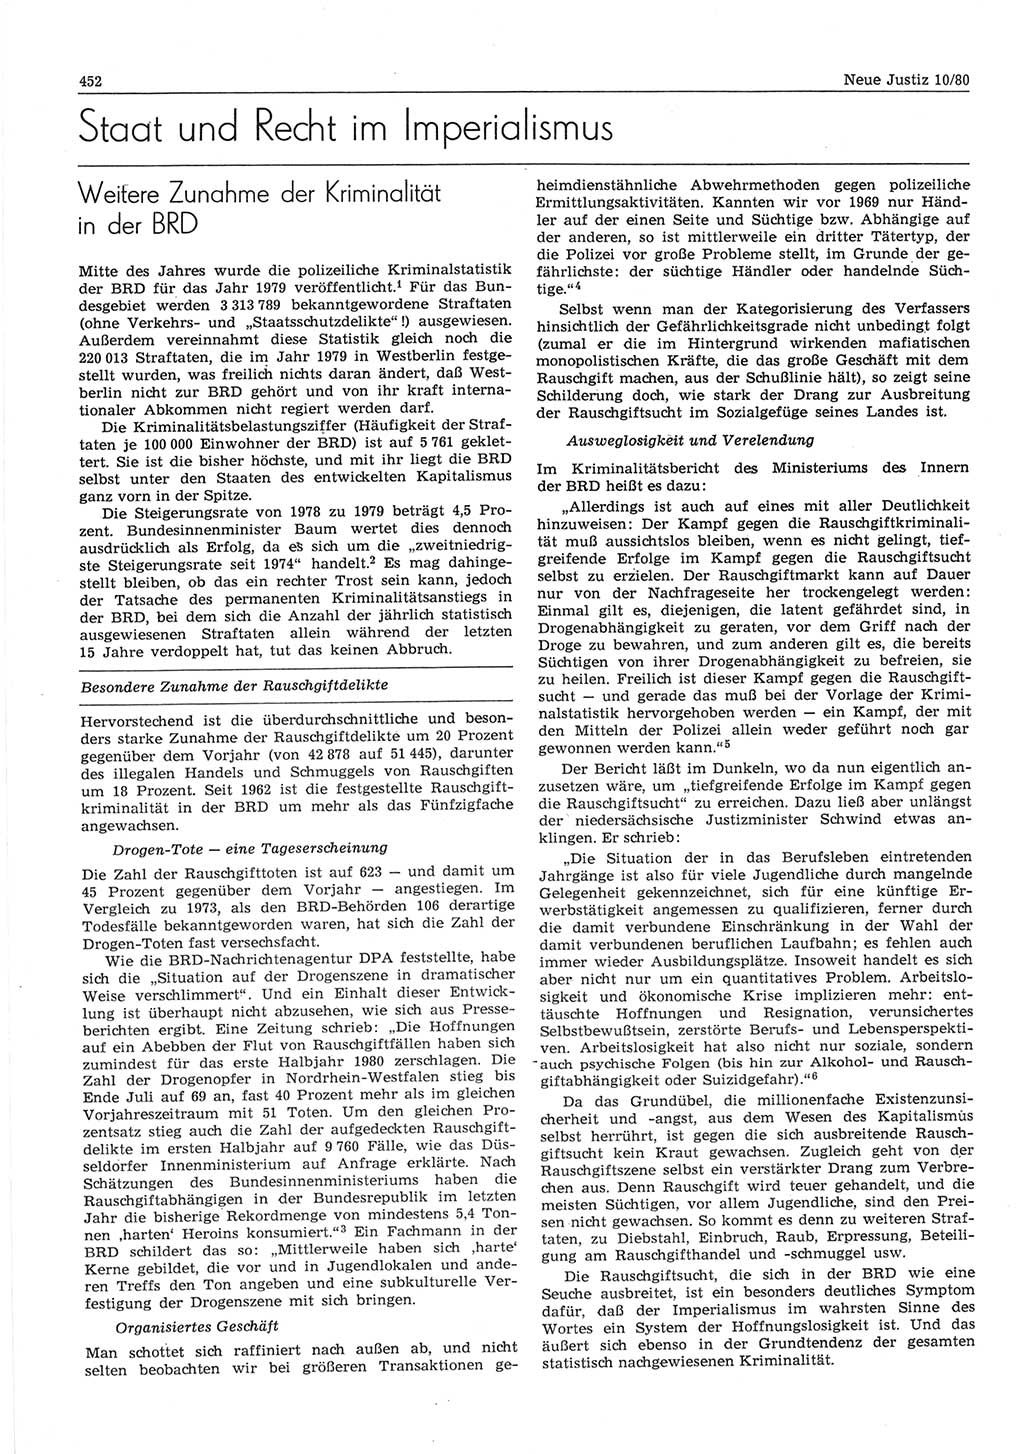 Neue Justiz (NJ), Zeitschrift für sozialistisches Recht und Gesetzlichkeit [Deutsche Demokratische Republik (DDR)], 34. Jahrgang 1980, Seite 452 (NJ DDR 1980, S. 452)